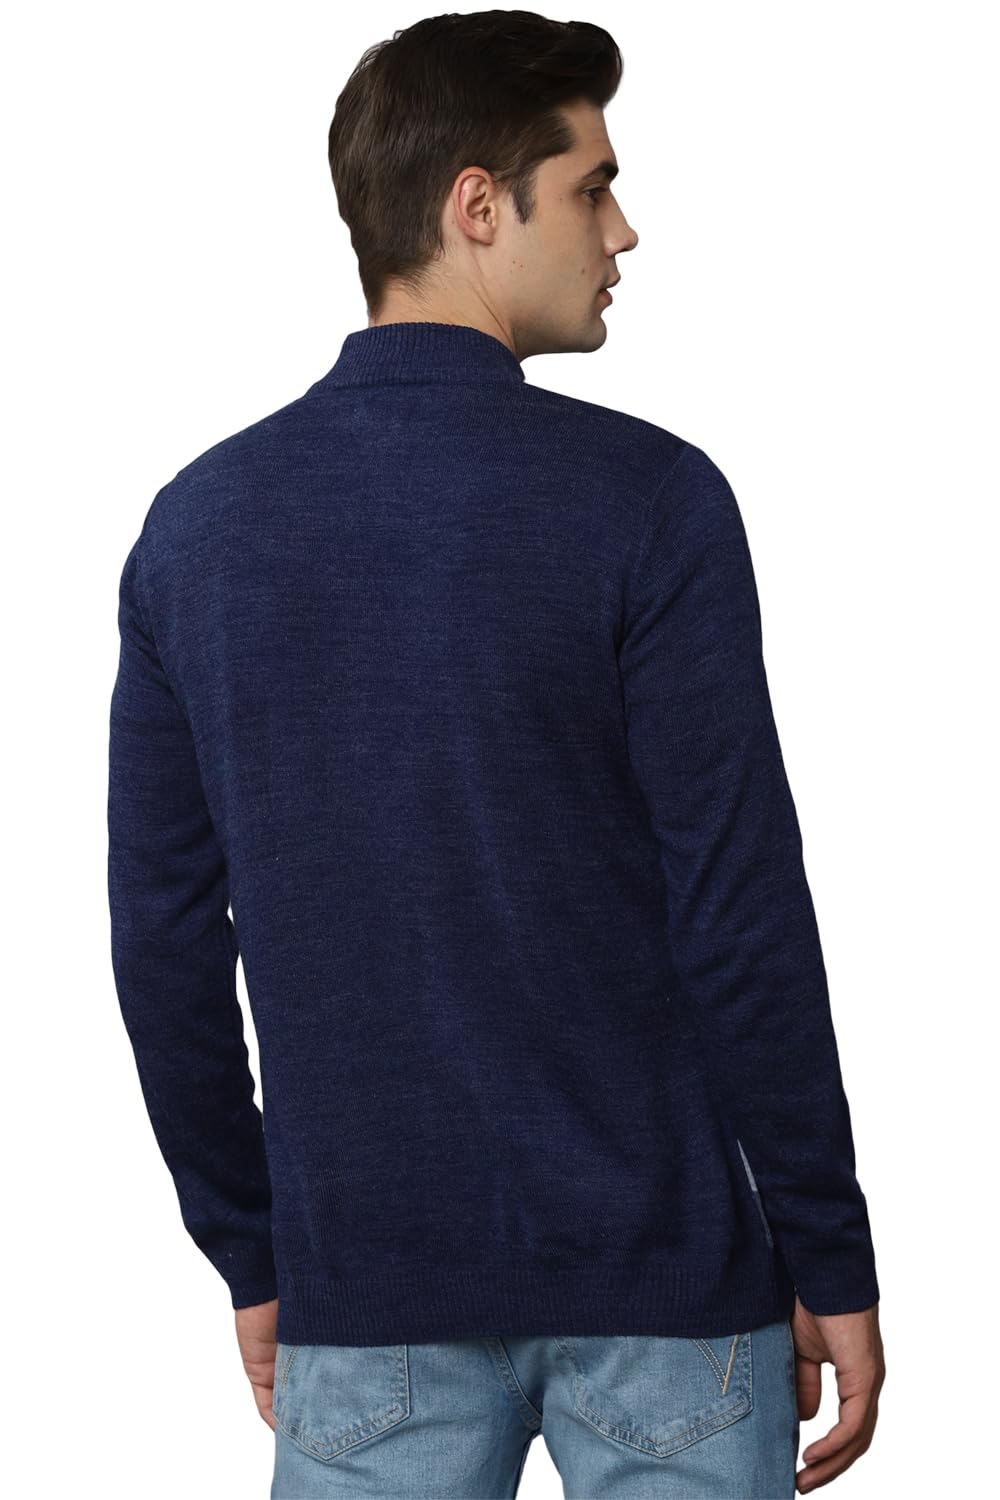 Allen Solly Men Acrylic Casual Pullover Sweater (ASSWSYRGFC44821_Navy